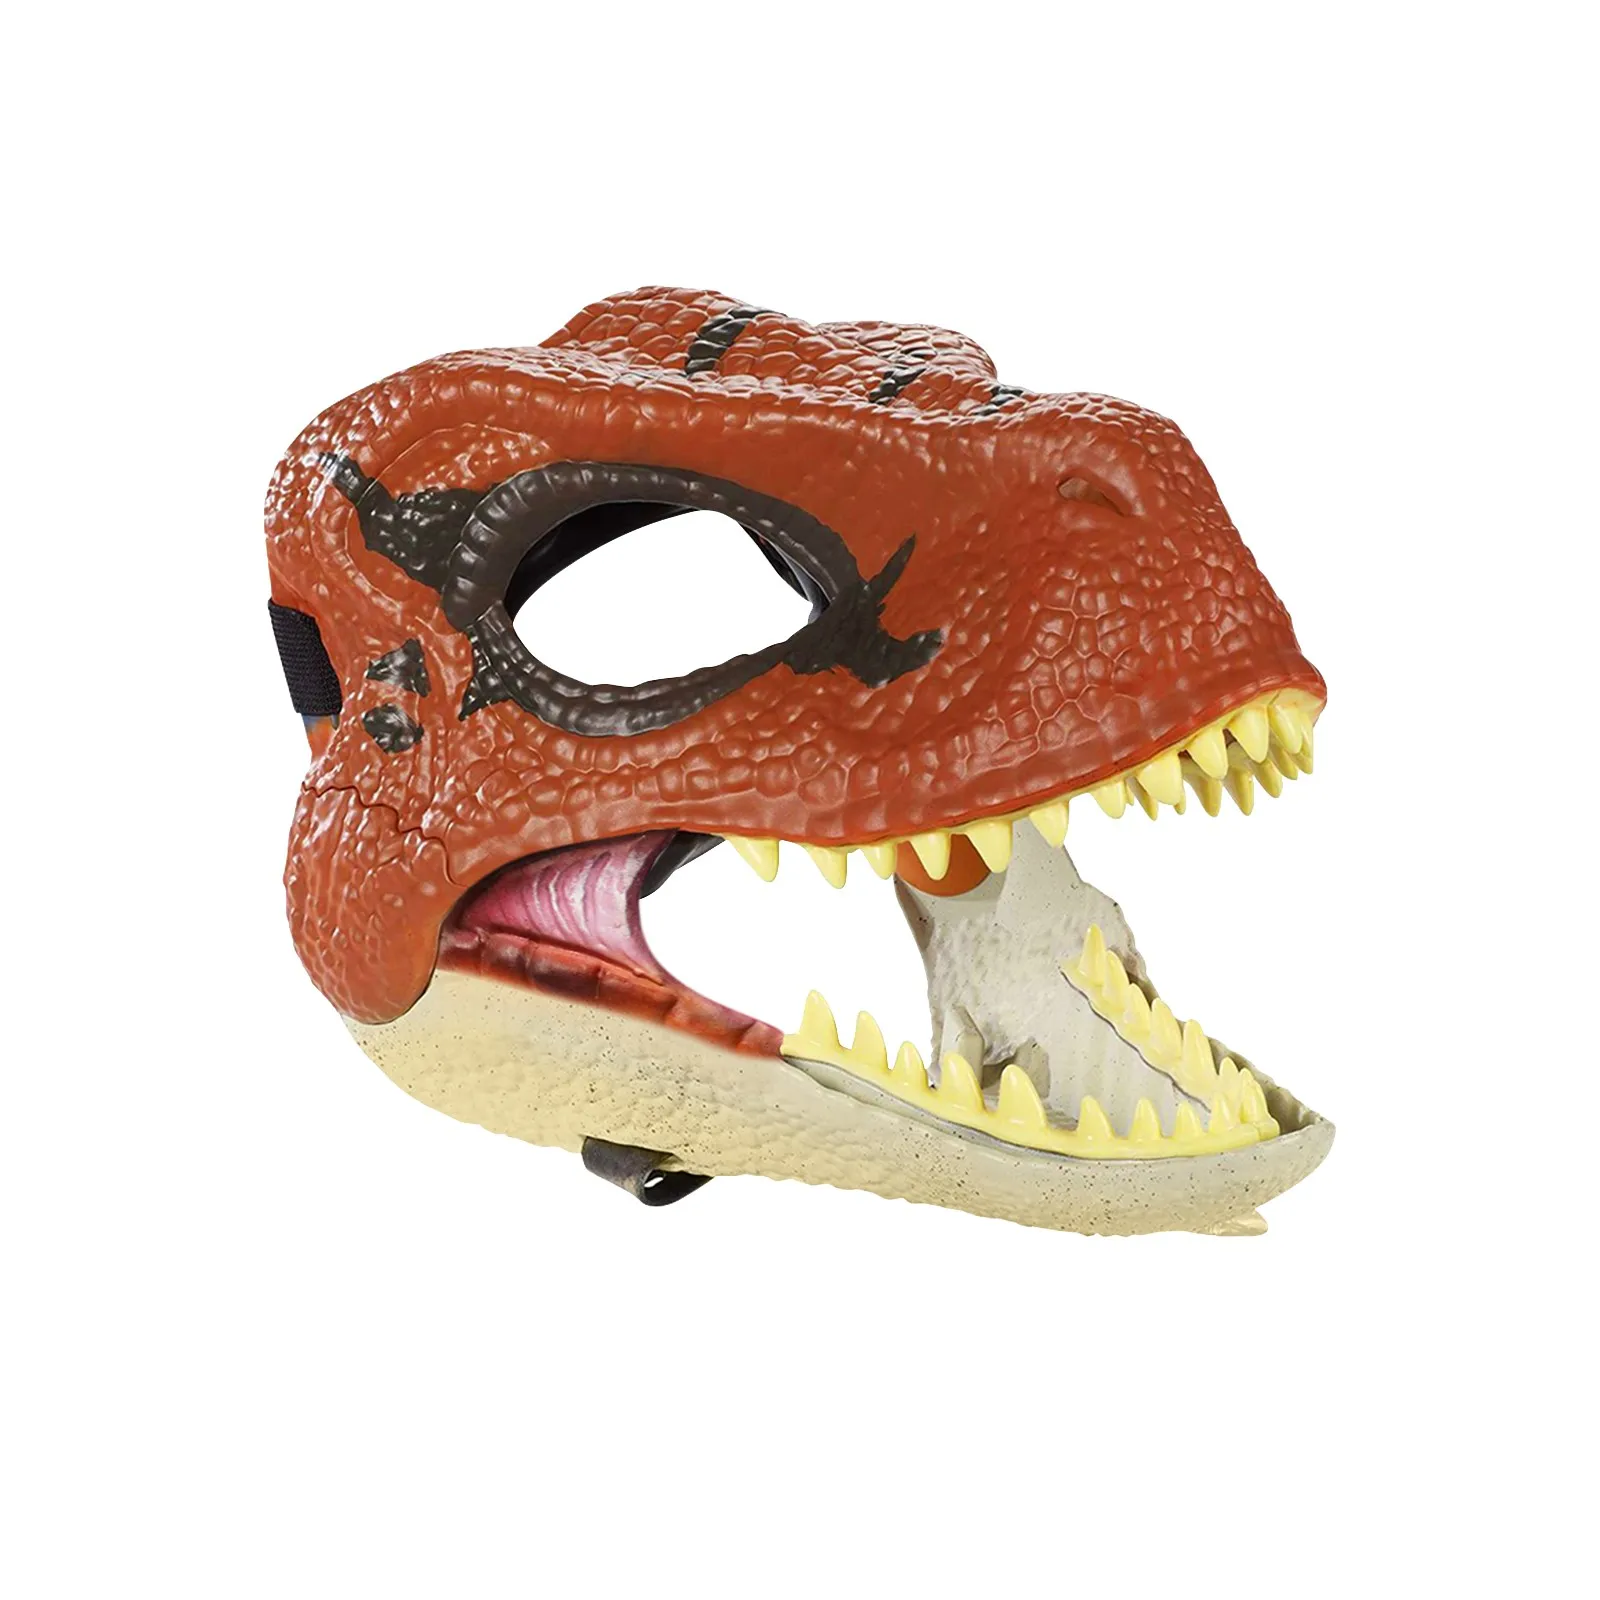 

Маска дракона динозавра на Хэллоуин, змея, открытый рот, латексный ужас, головной убор динозавра, реквизит для косплея на Хэллоуин, фото, украшения